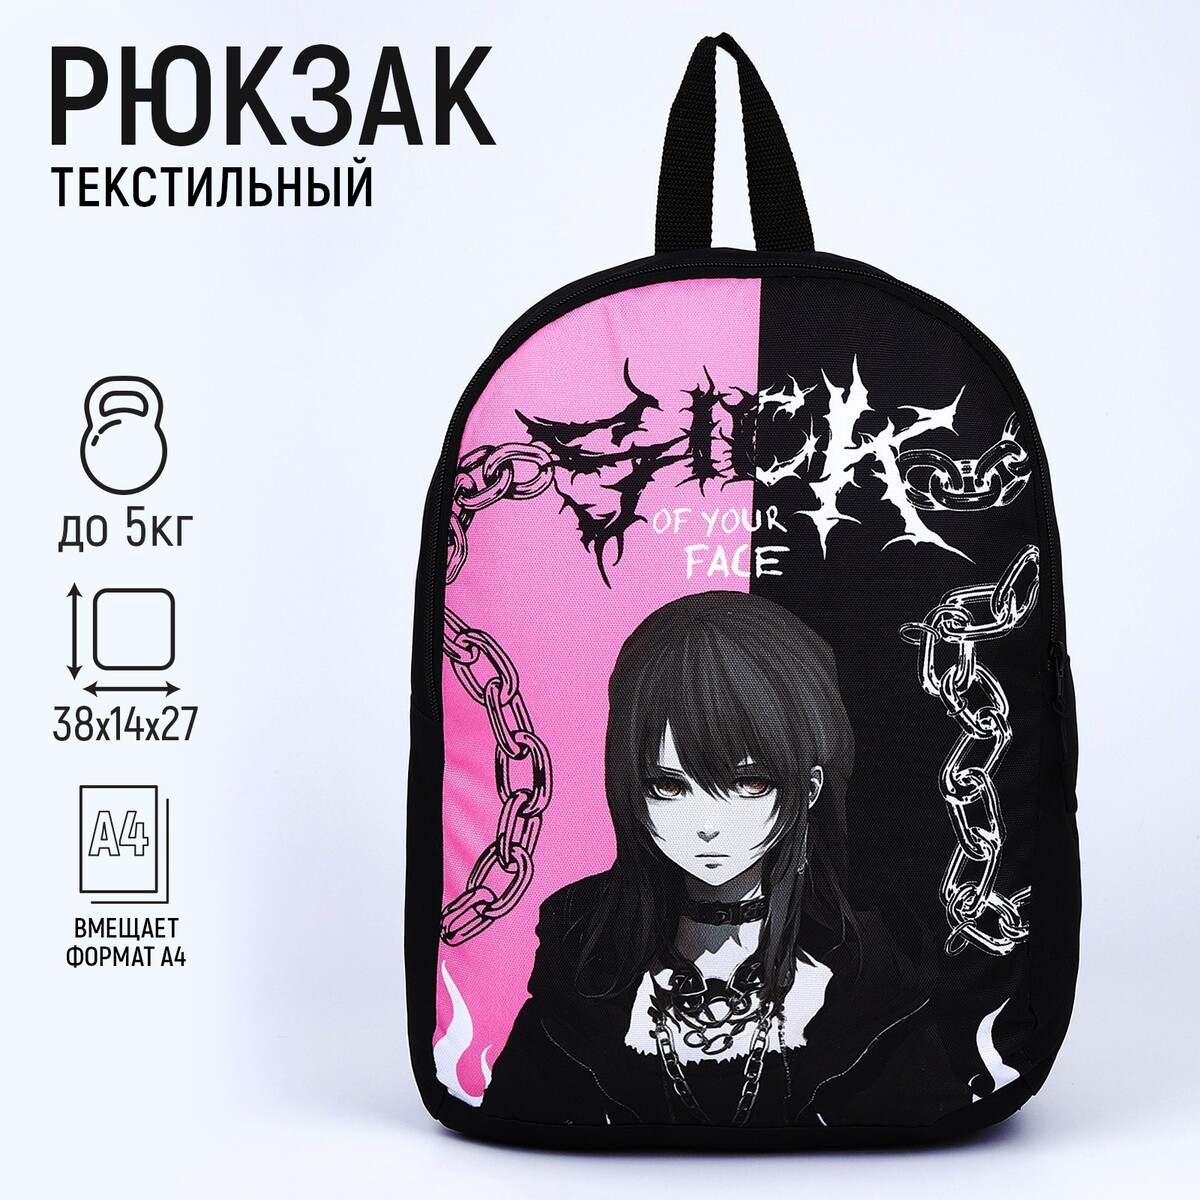 Рюкзак текстильный аниме, 38х14х27 см, цвет черный, розовый рюкзак текстильный акулы 38х14х27 см